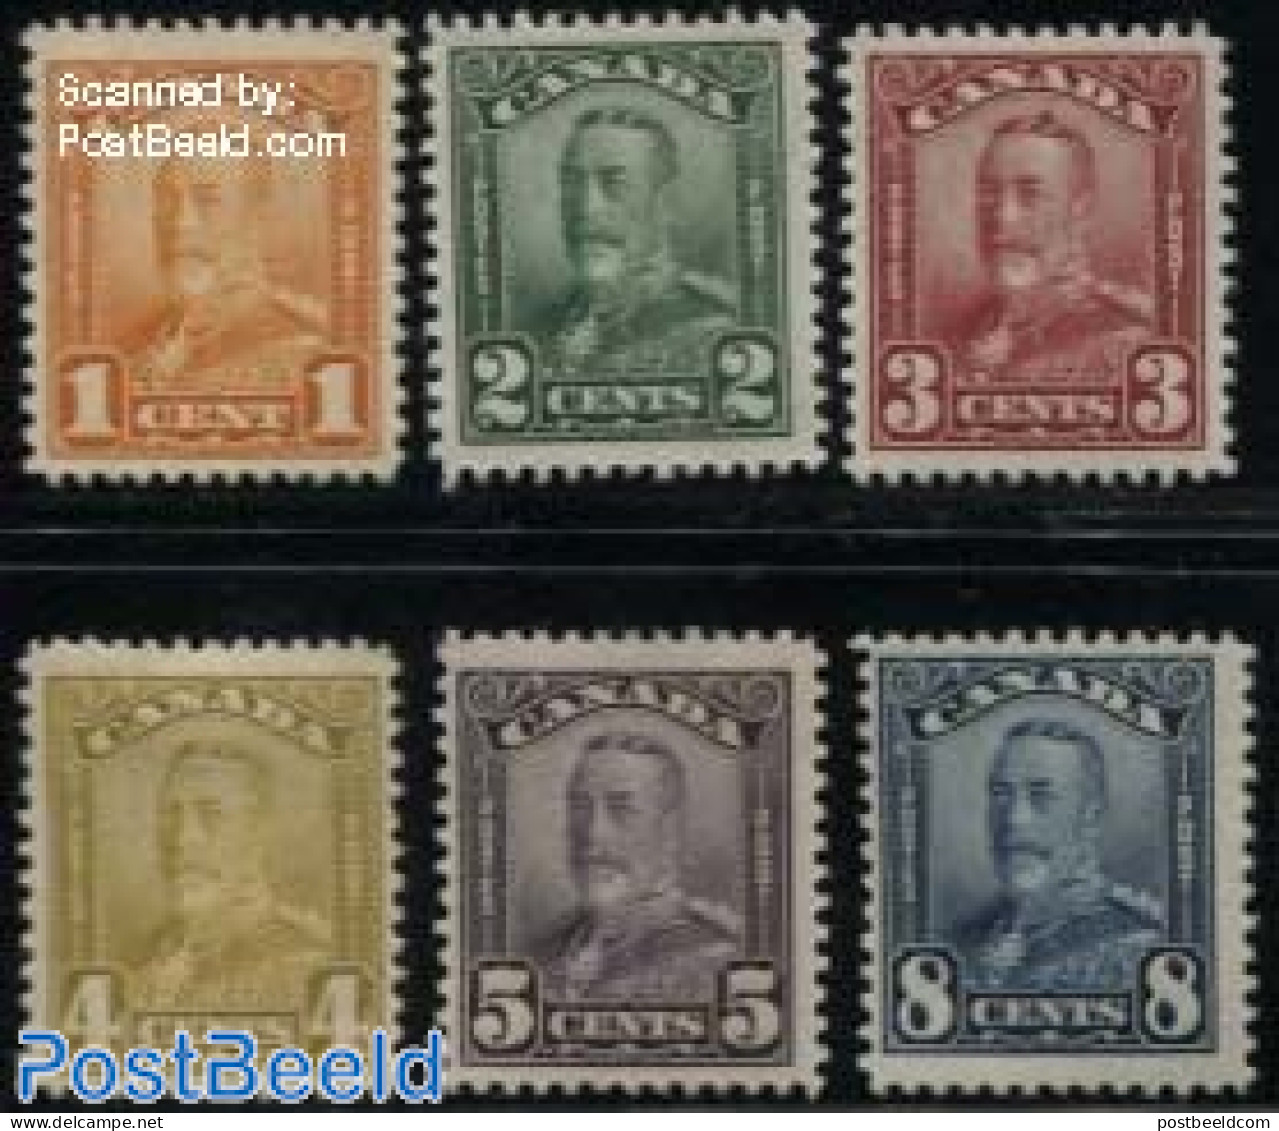 Canada 1928 Definitives 6v, Unused (hinged) - Unused Stamps